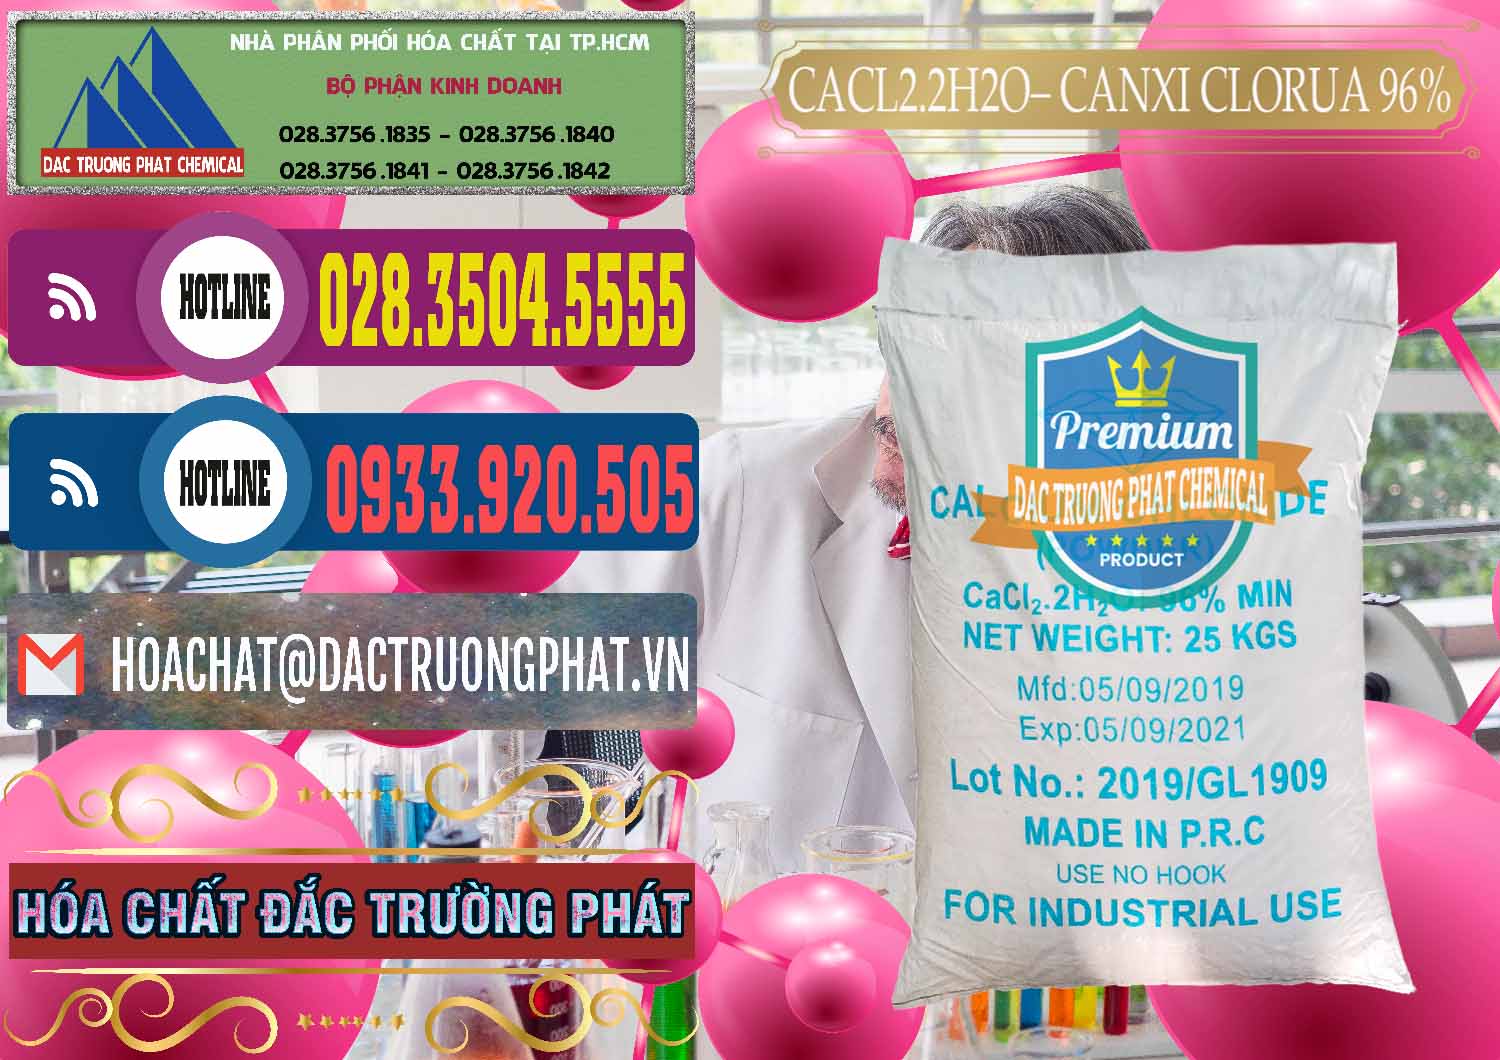 Cty chuyên cung ứng - bán CaCl2 – Canxi Clorua 96% Logo Kim Cương Trung Quốc China - 0040 - Cty nhập khẩu & phân phối hóa chất tại TP.HCM - muabanhoachat.com.vn